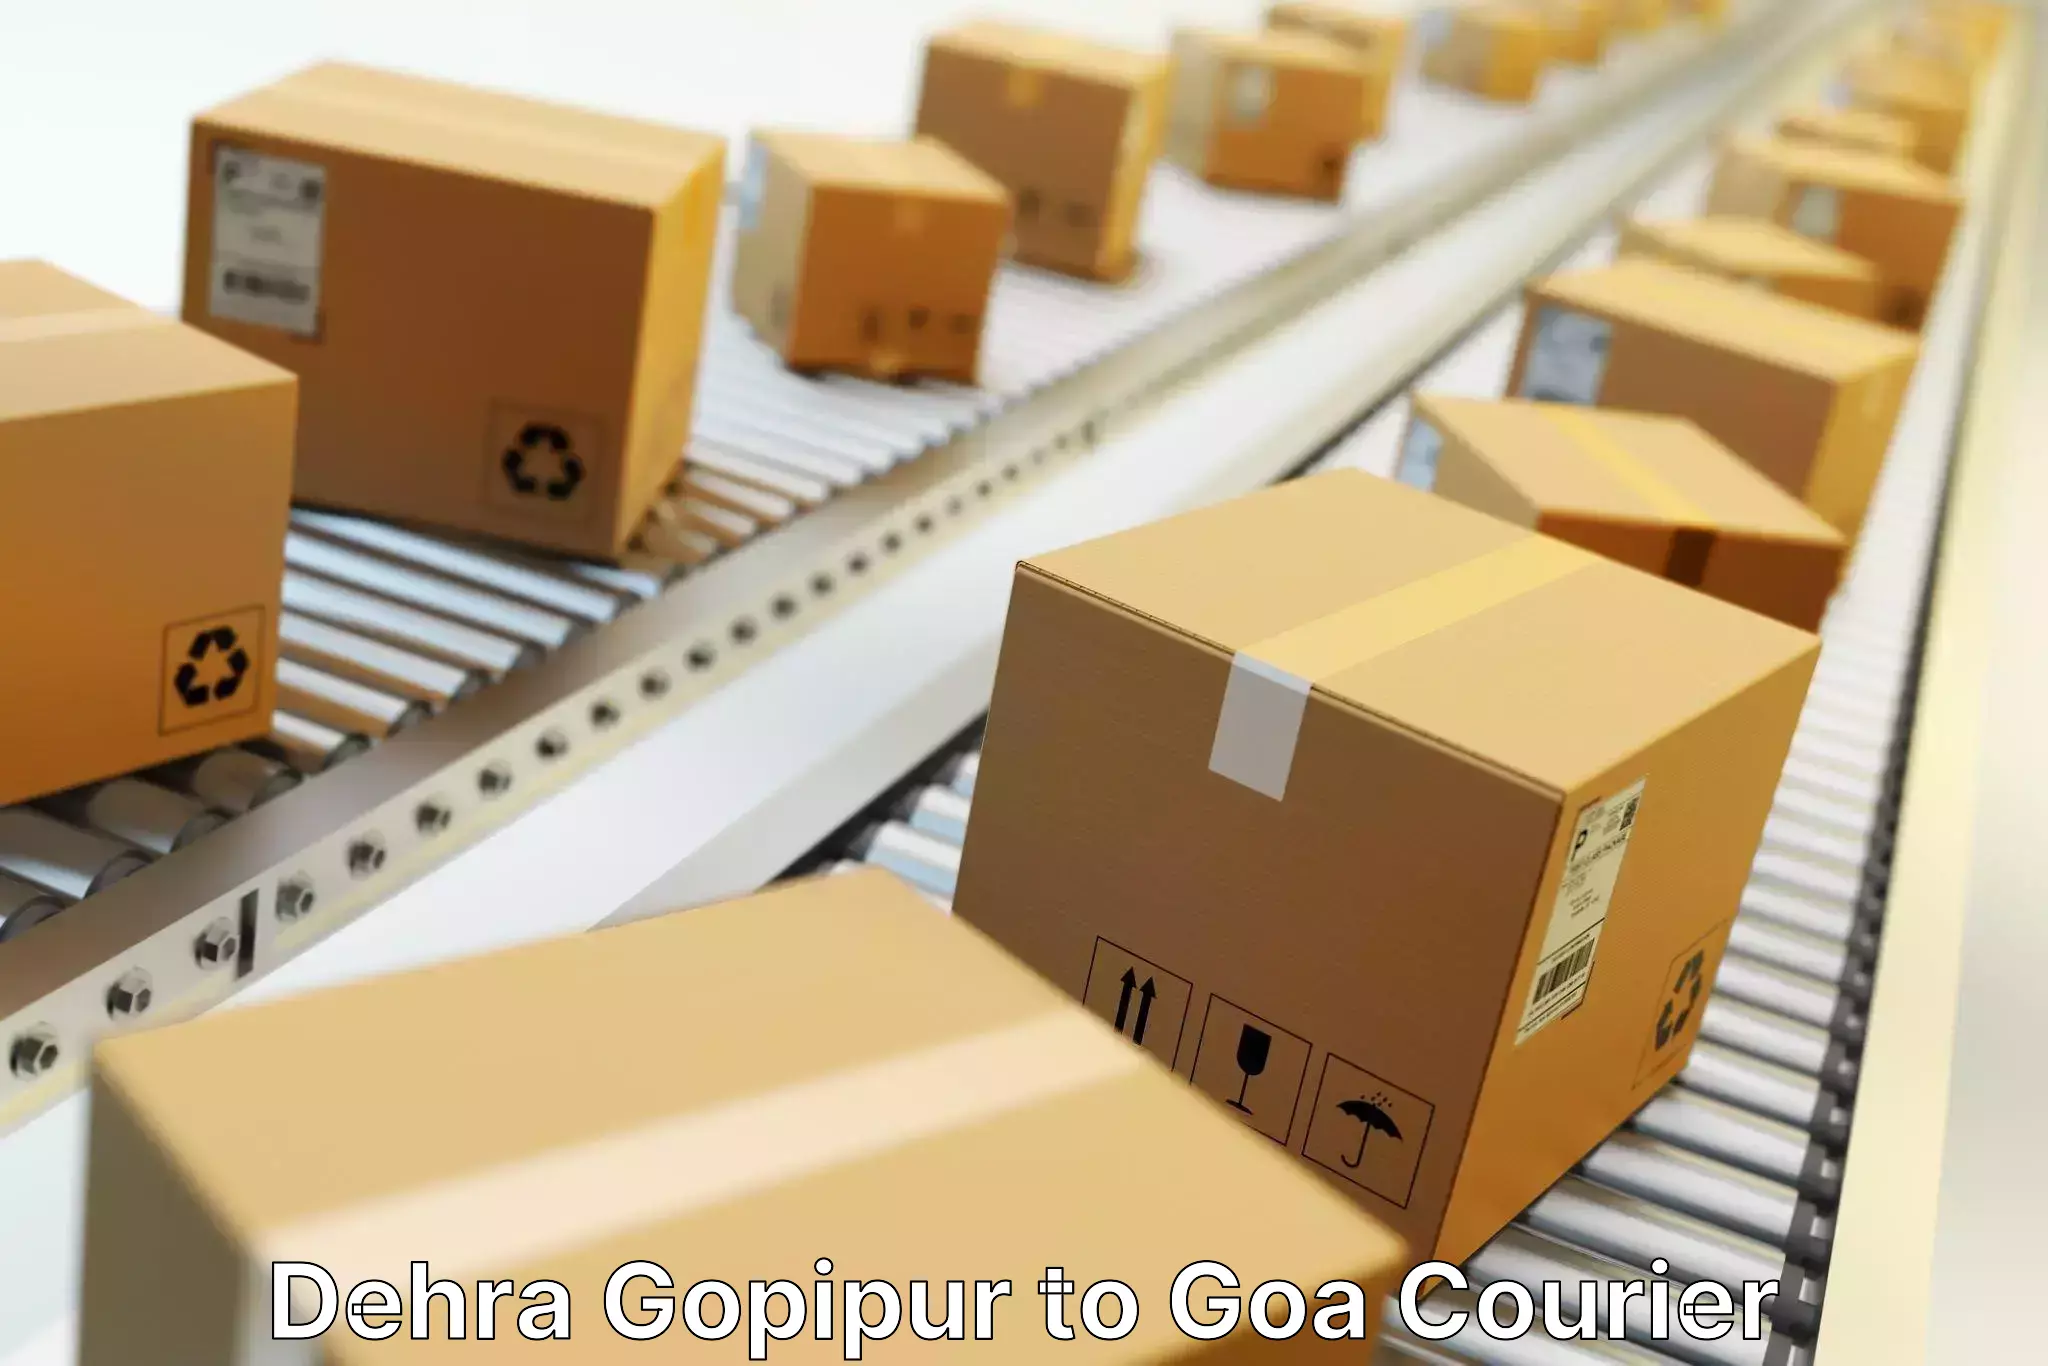 Full-service courier options Dehra Gopipur to Sanvordem